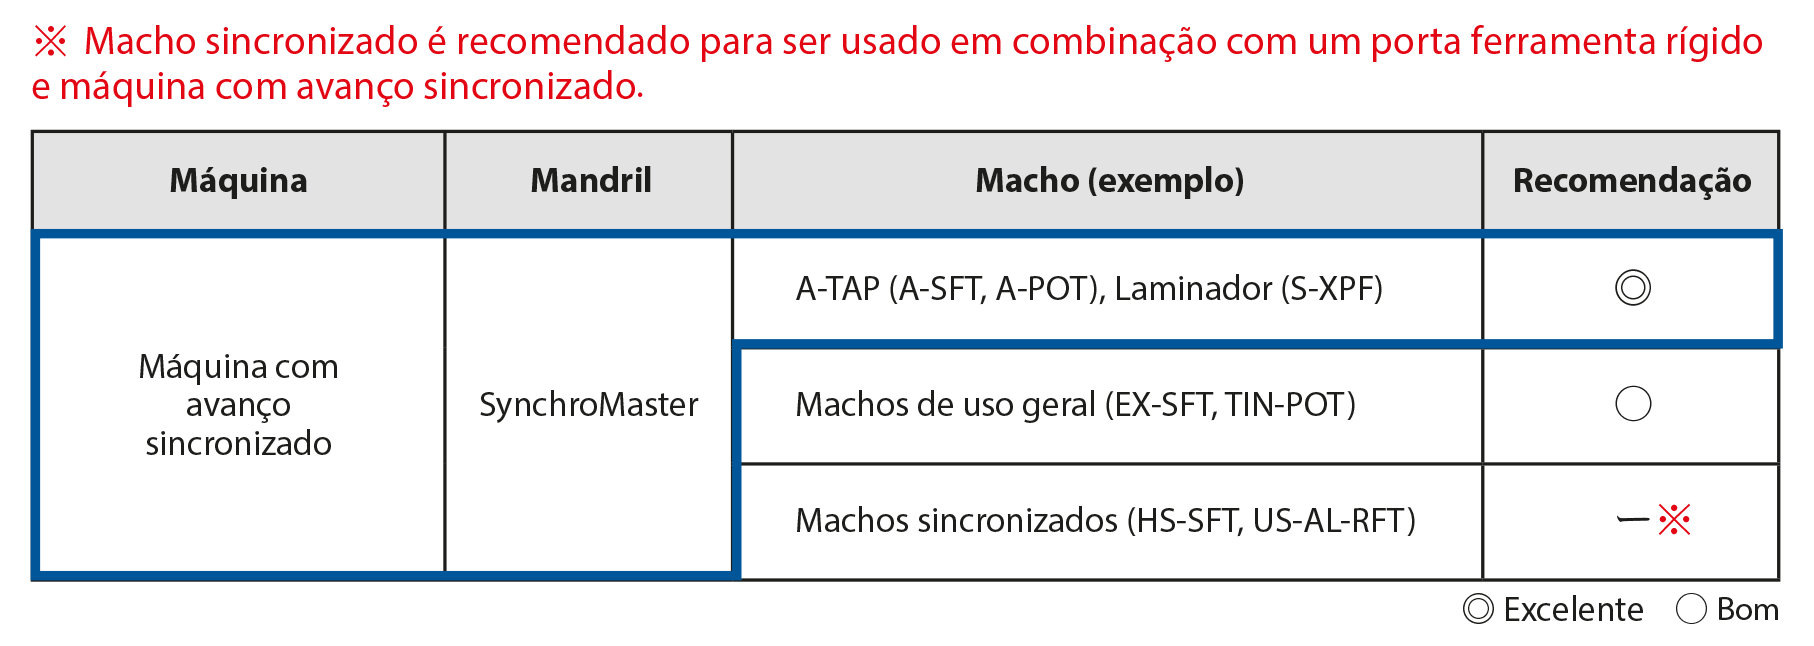 Combinação de Ferramentas Recomendada: A-TAP (A-SFT, A-POT)